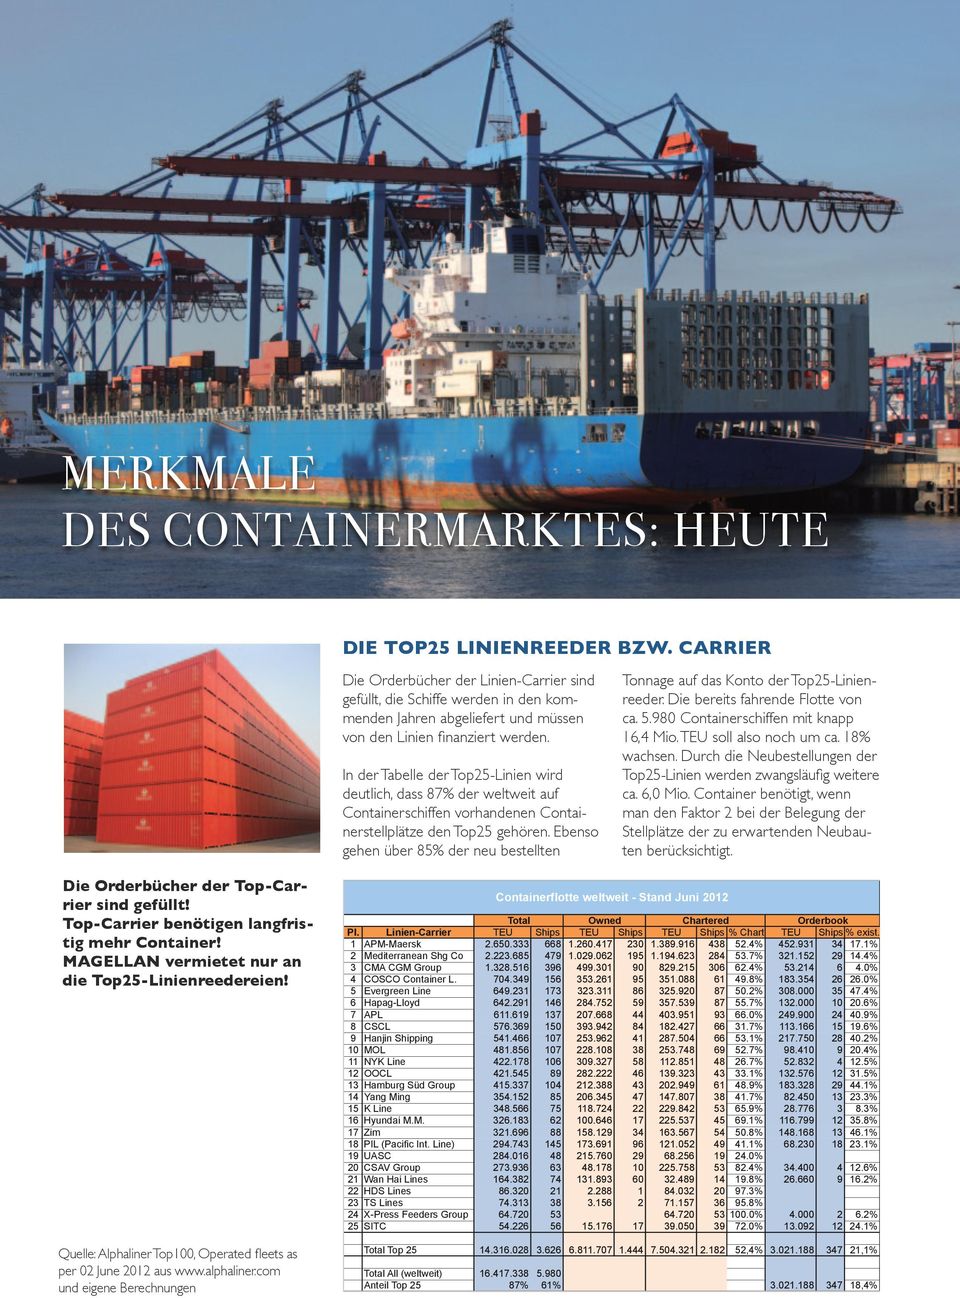 In der Tabelle der Top25-Linien wird deutlich, dass 87% der weltweit auf Containerschiffen vorhandenen Containerstellplätze den Top25 gehören.